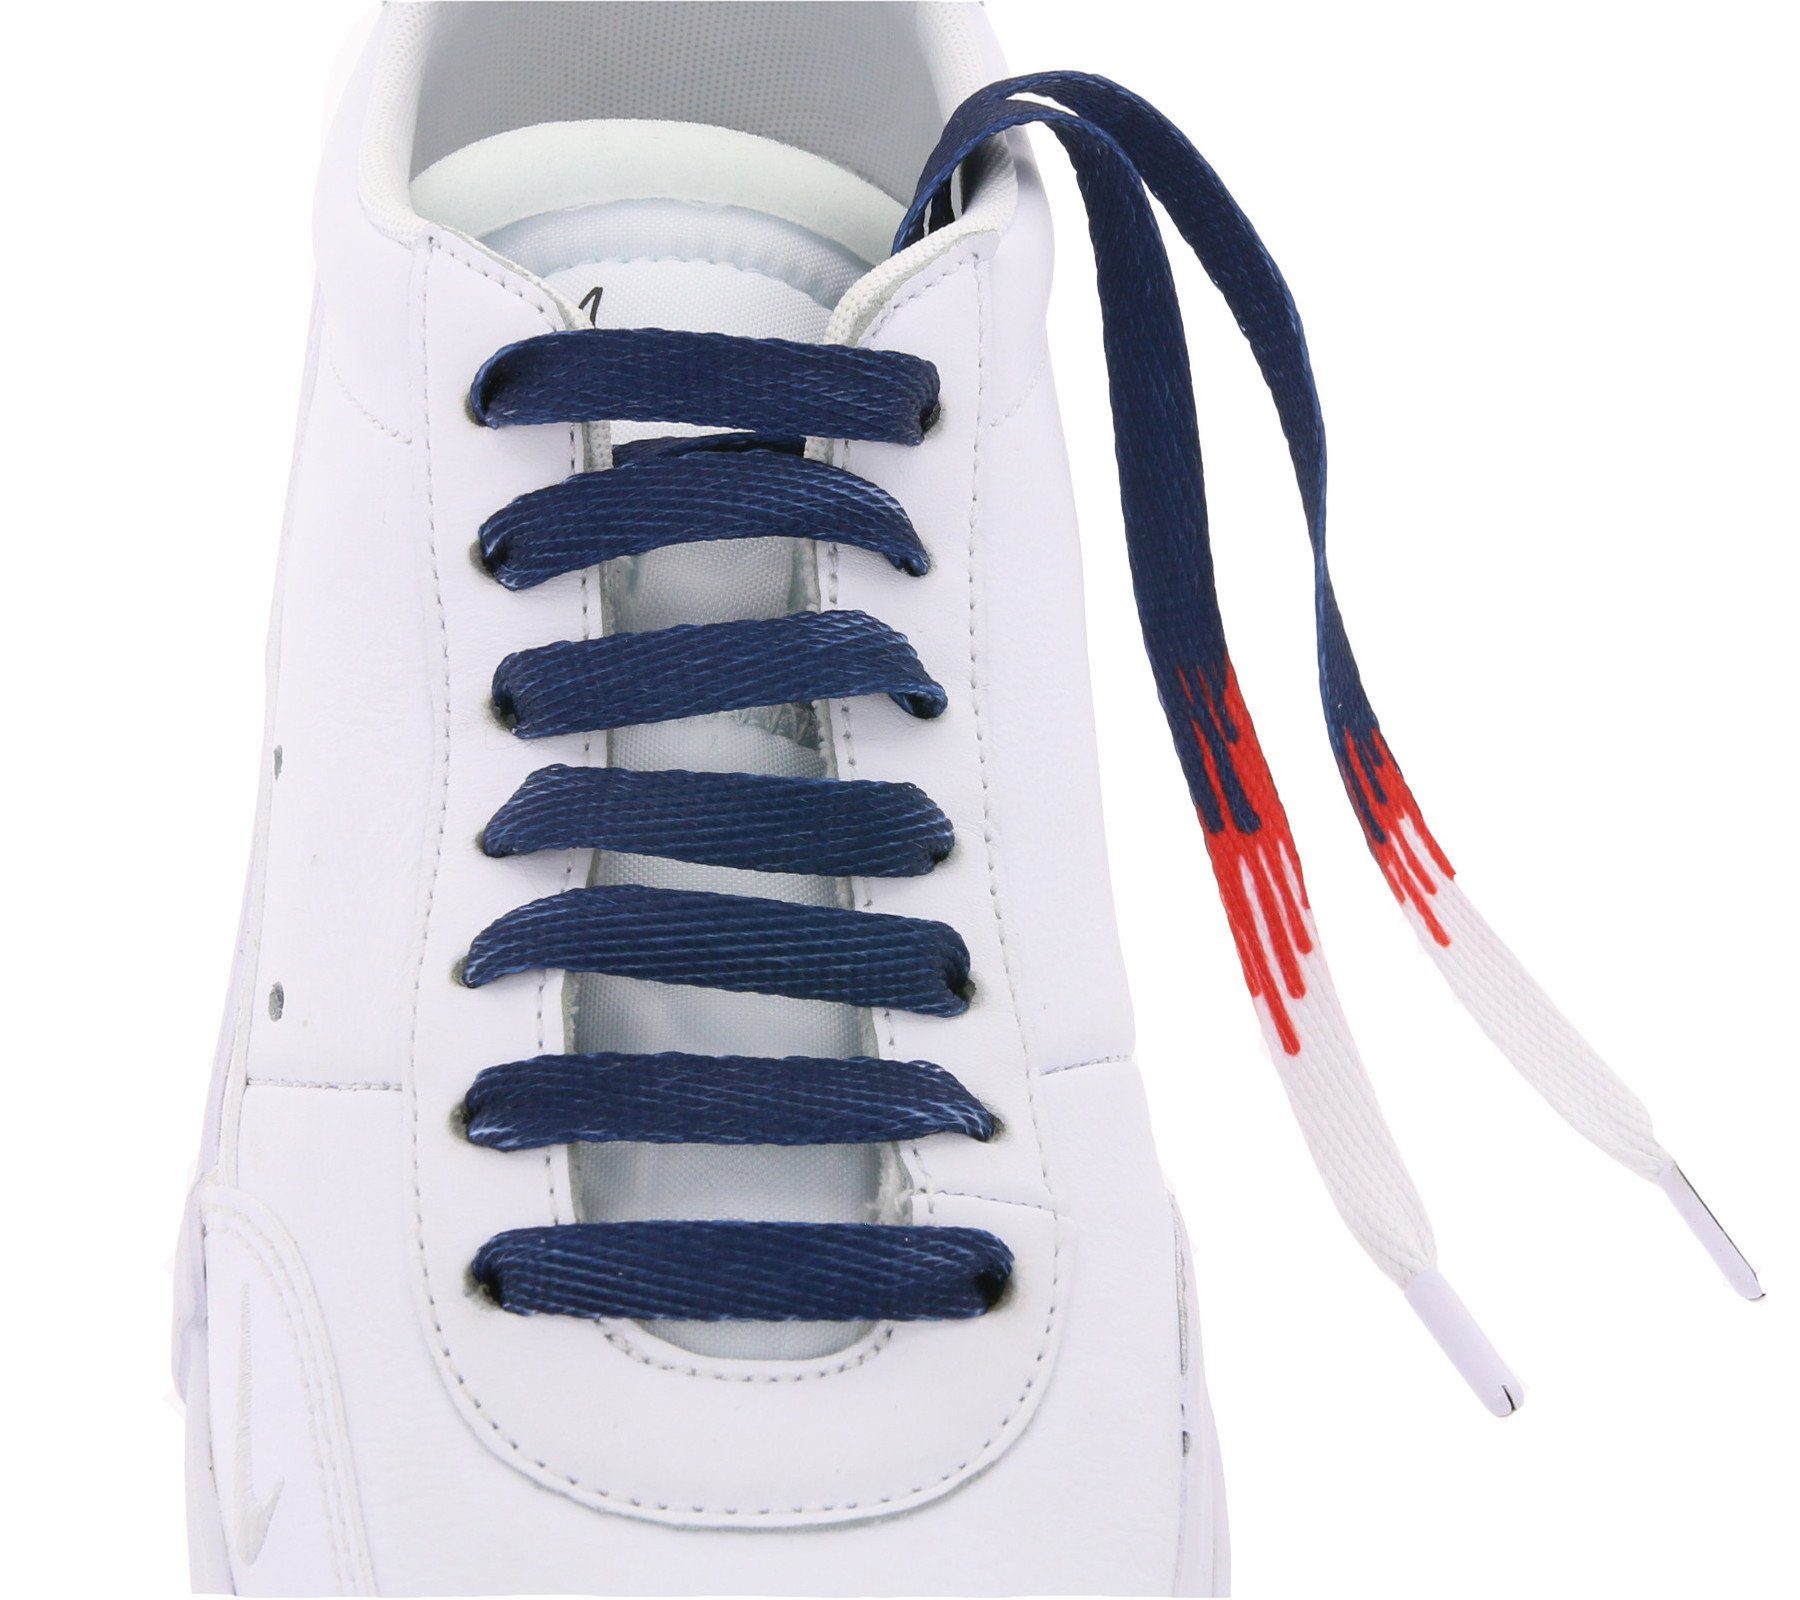 Navy/Weiß/Rot angesagte Schnürsenkel top Tubelaces TubeLaces Schnürsenkel Schuhe Schnürbänder Schuhbänder